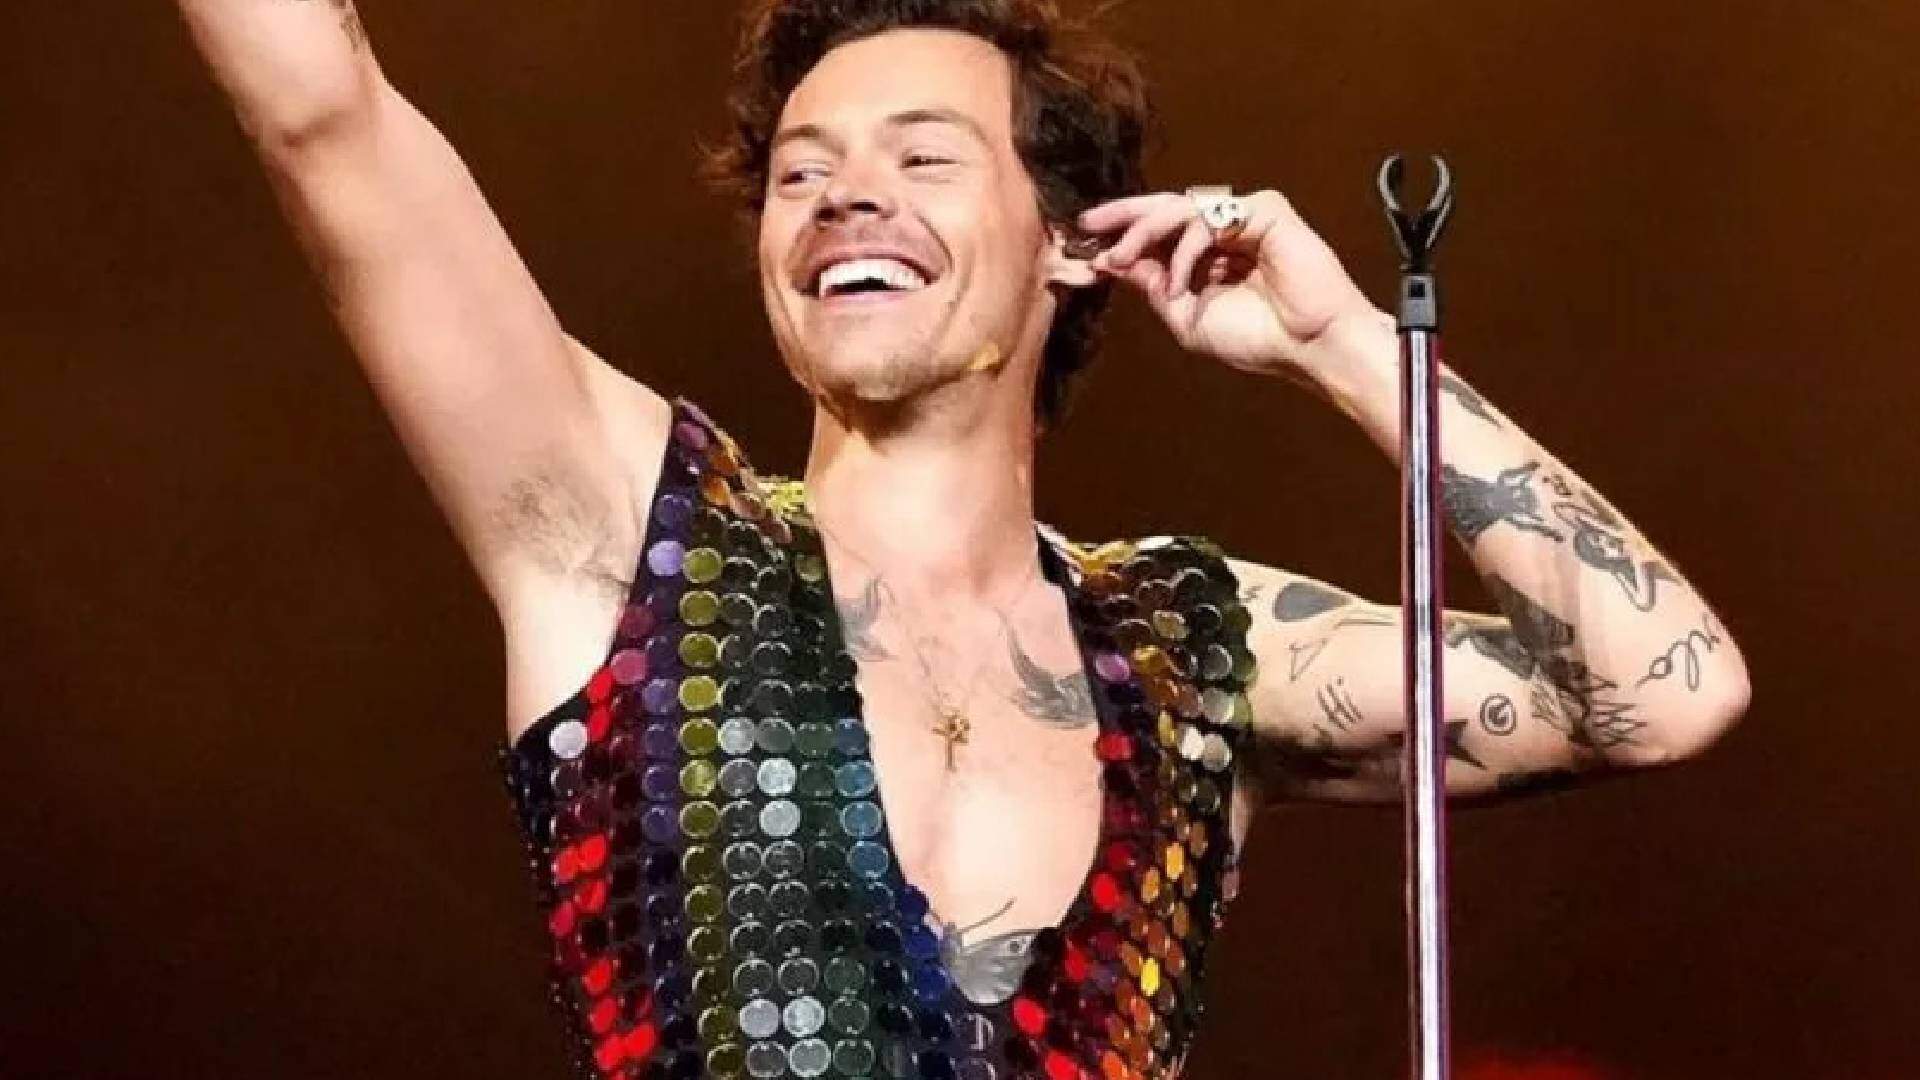 Harry Styles rasga a calça durante show em São Paulo e cena viraliza na web - Metropolitana FM